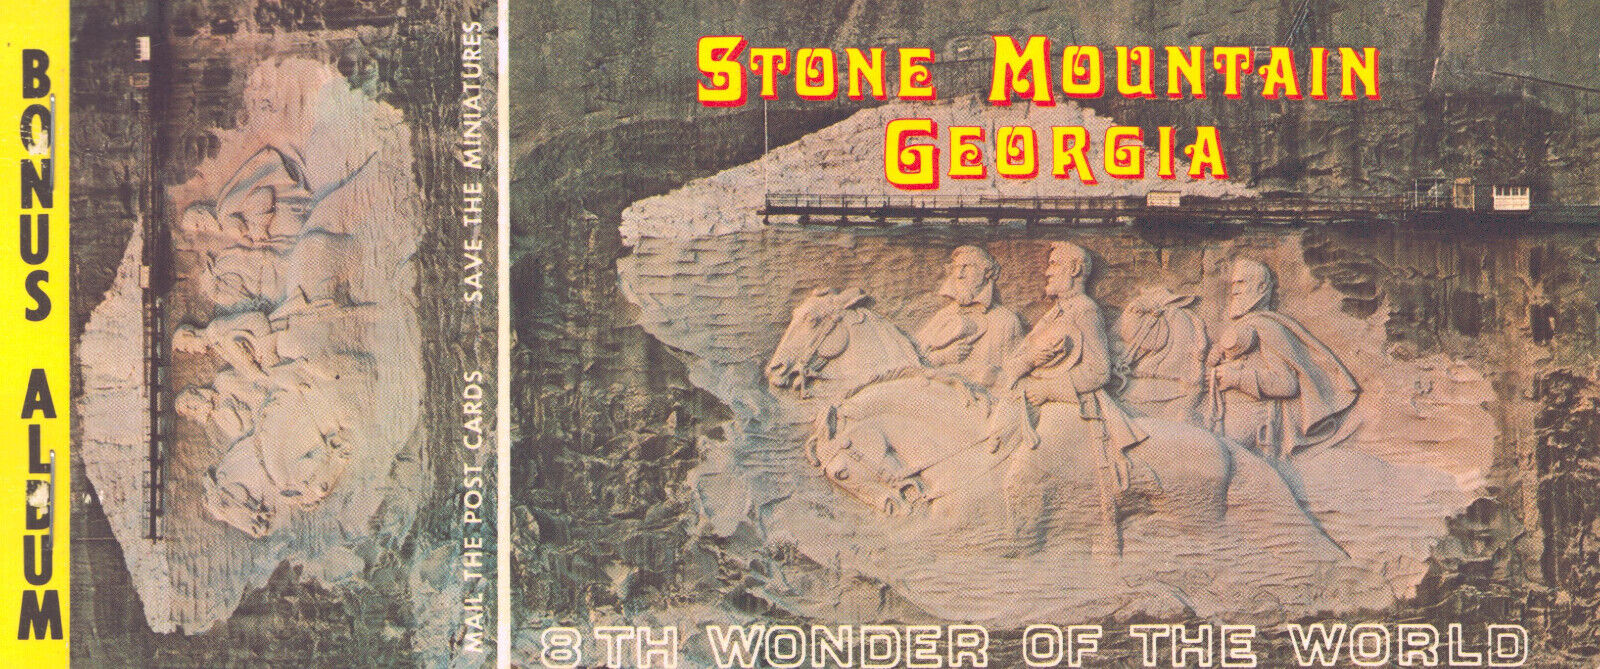 Vintage Stone Mountain Georgia Postcard Booklet 10 Postcards and 10 Mini 1969